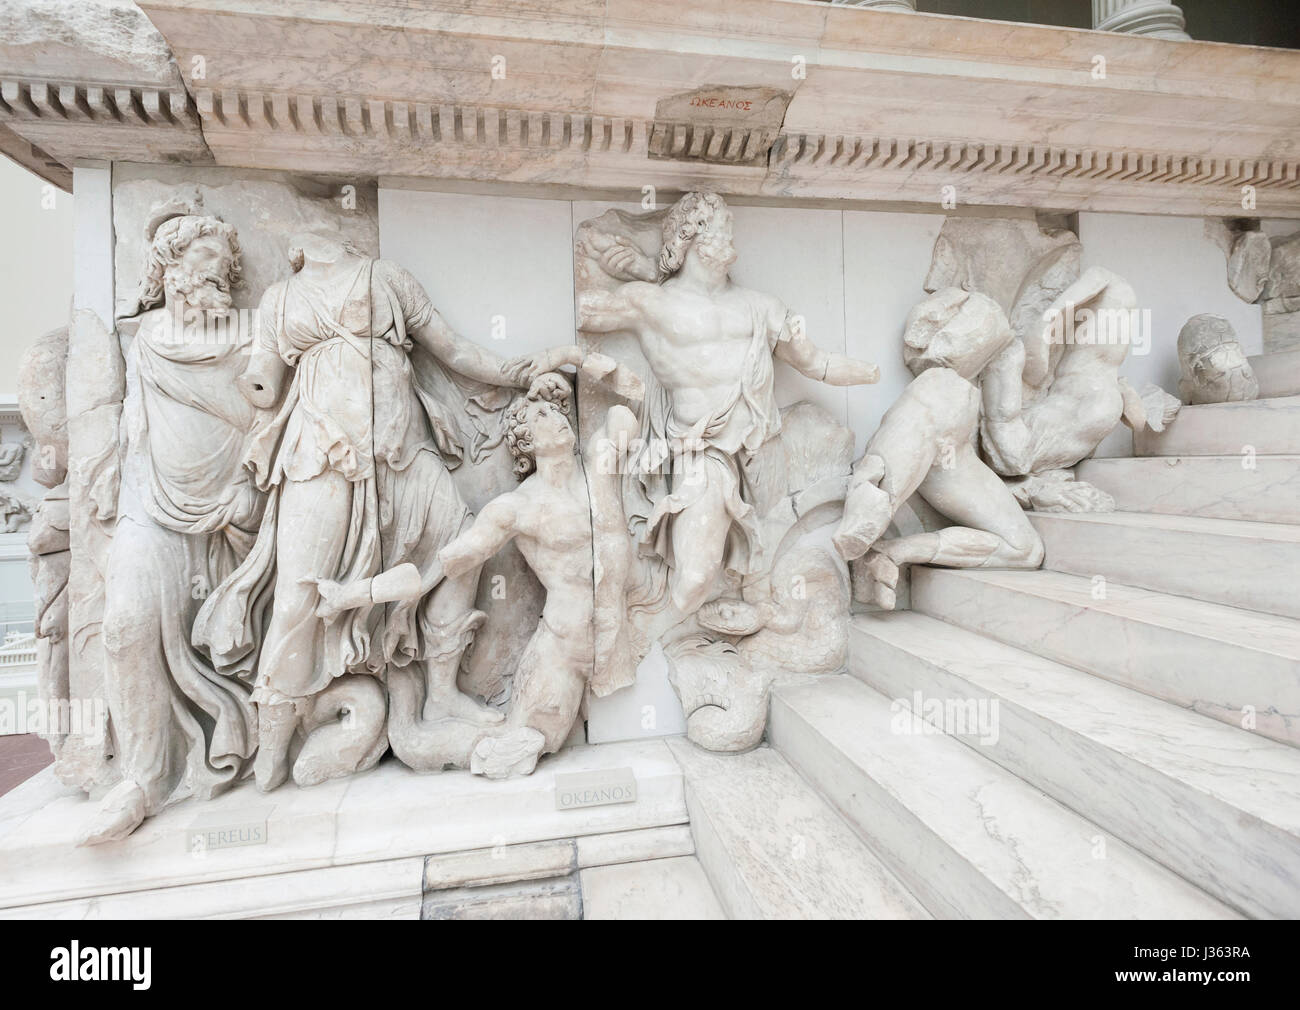 Sur l'autel de Pergame frise au Musée Pergamon de Berlin Allemagne Banque D'Images